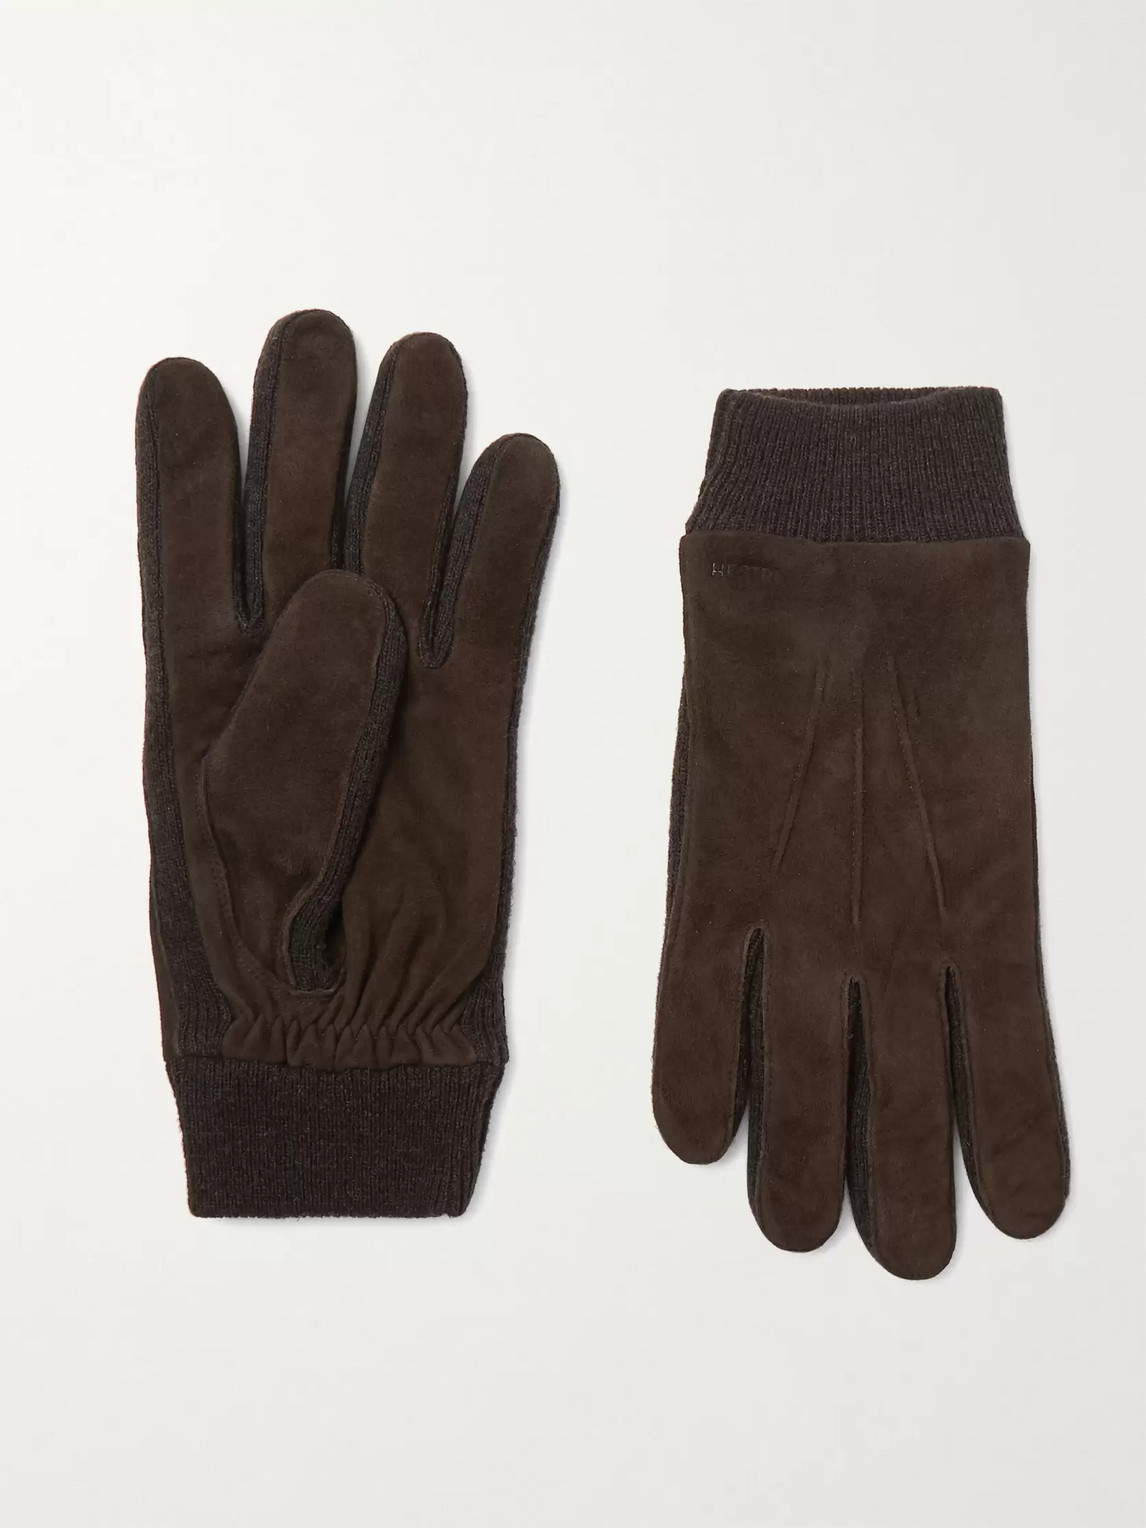 Hestra Geoffrey Suede Gloves In Brown